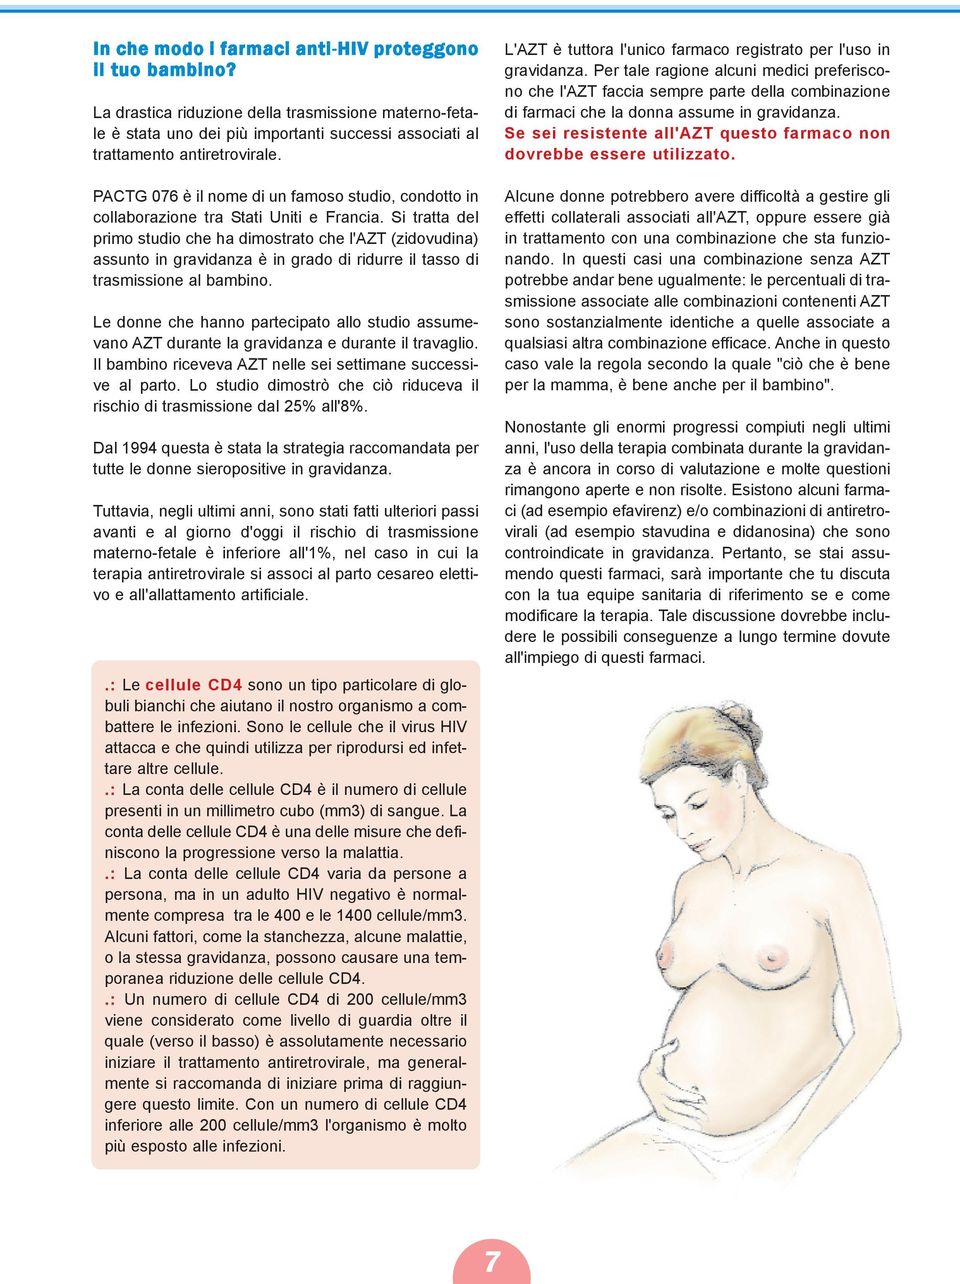 Si tratta del primo studio che ha dimostrato che l'azt (zidovudina) assunto in gravidanza è in grado di ridurre il tasso di trasmissione al bambino.